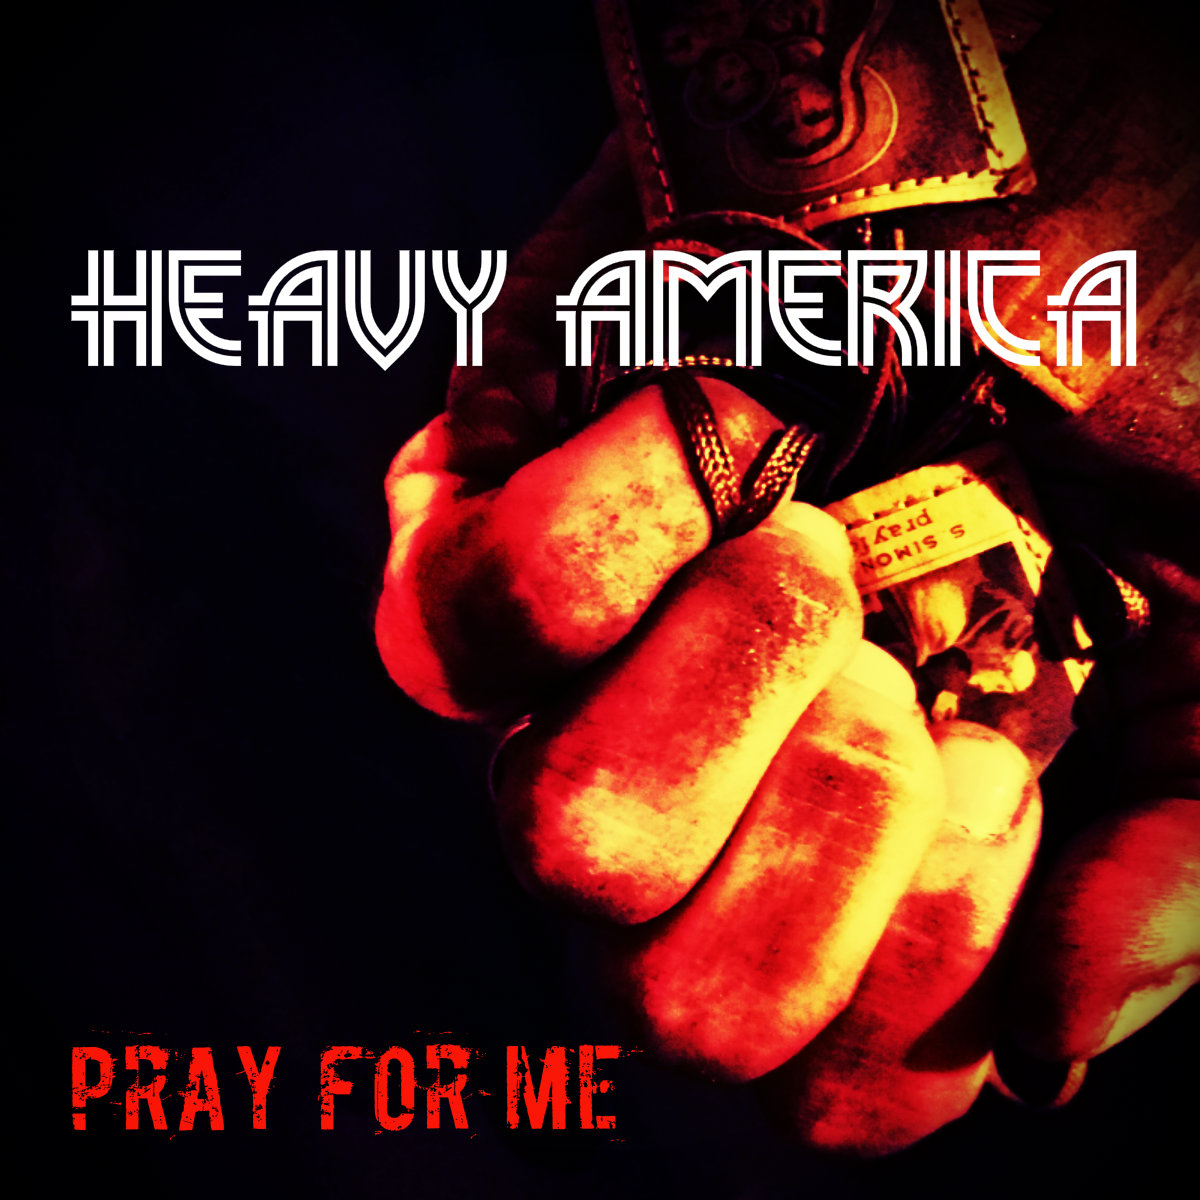  Heavy AmericA – “Pray For Me”